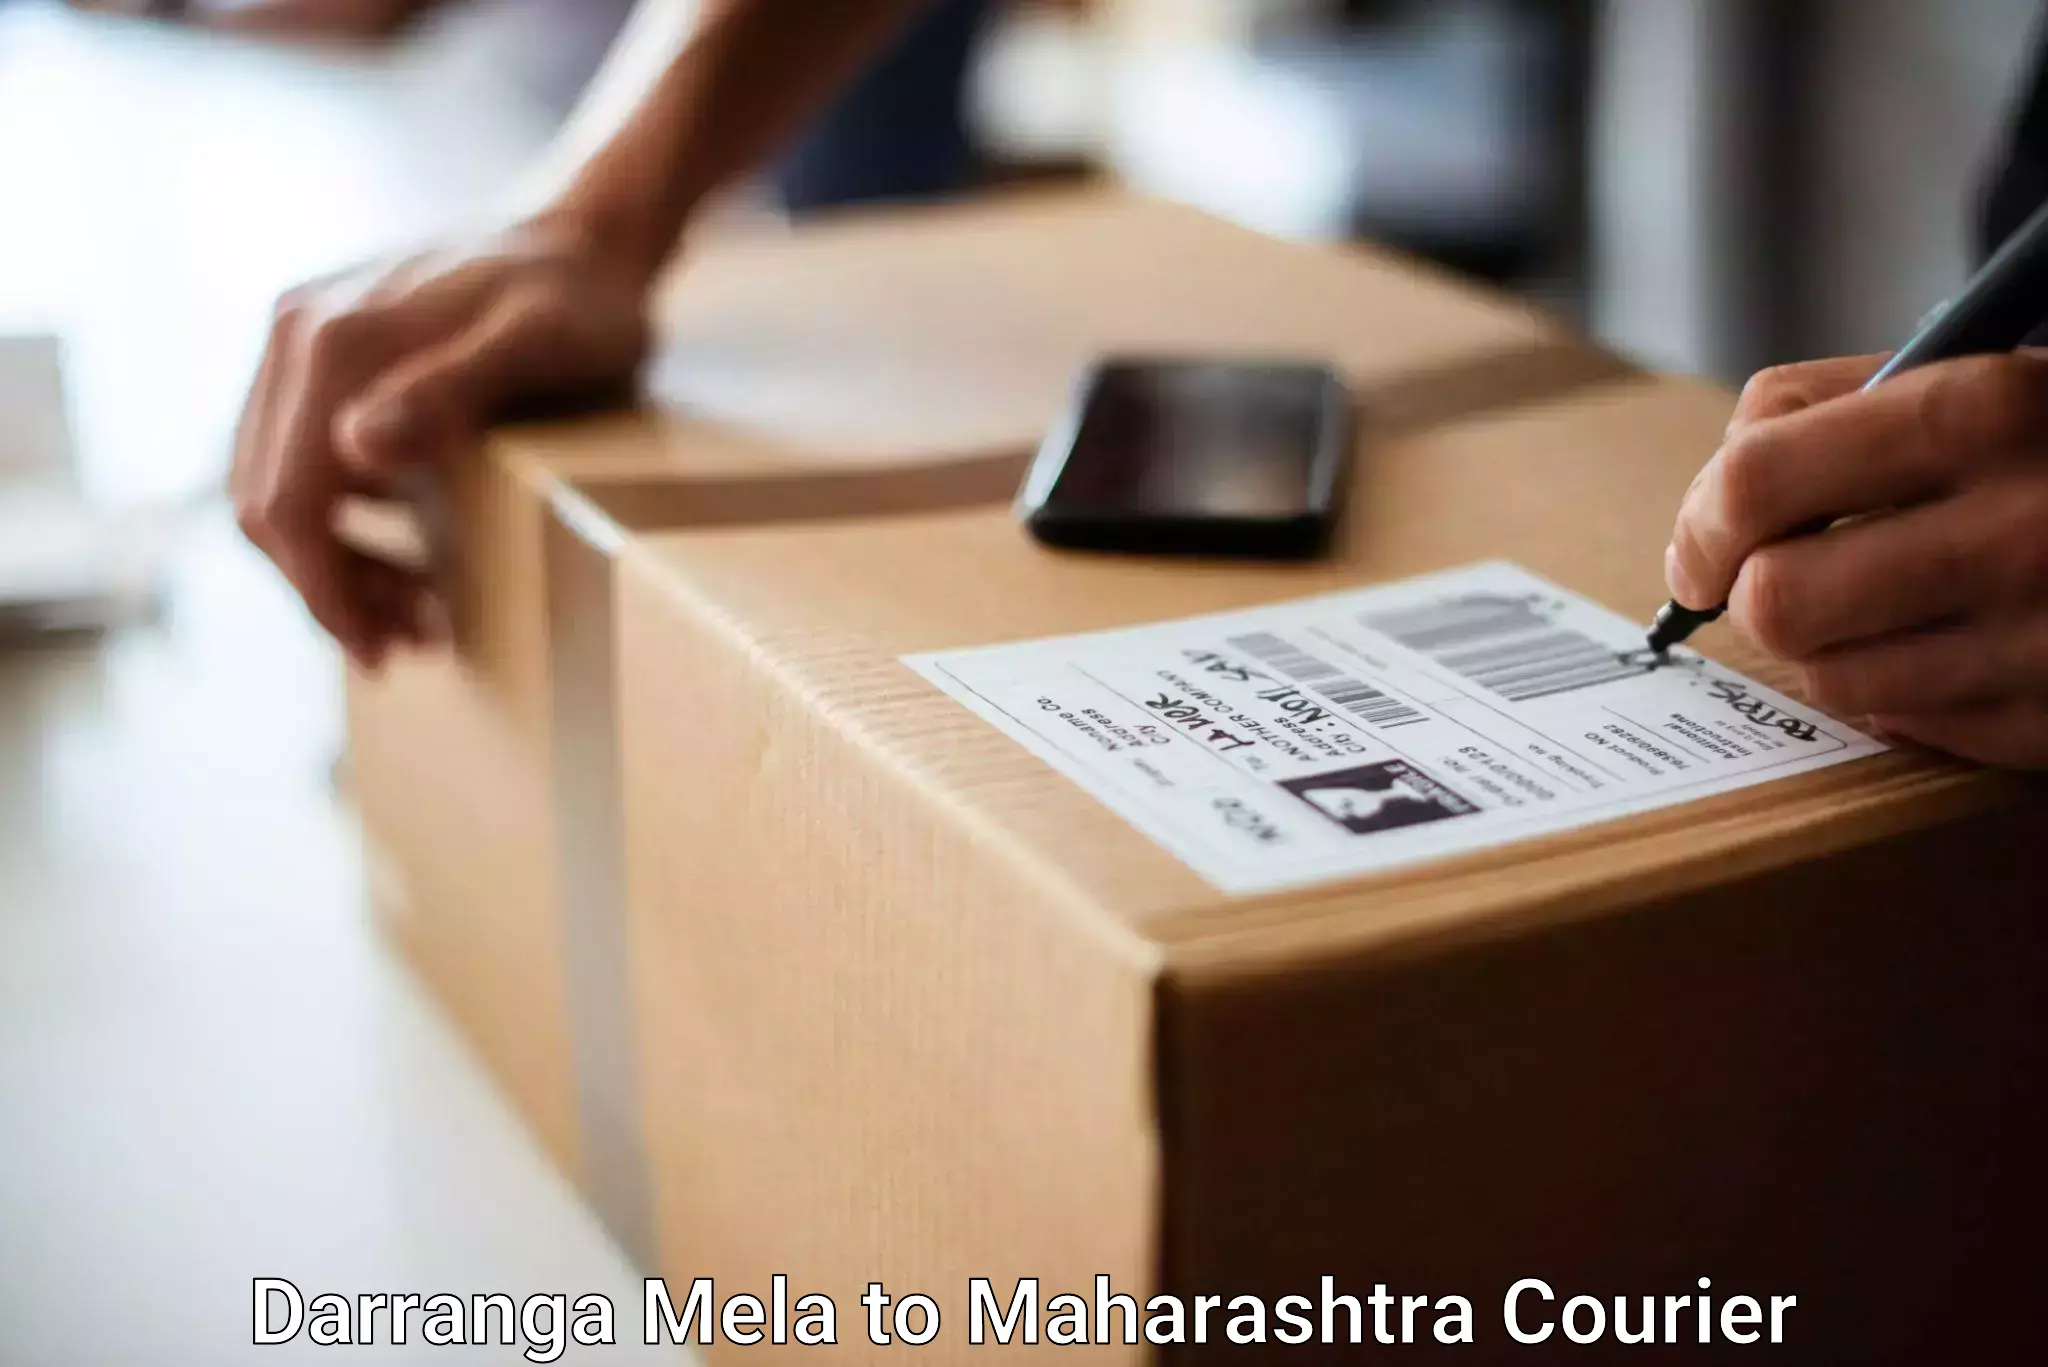 Baggage delivery estimate in Darranga Mela to Wardha